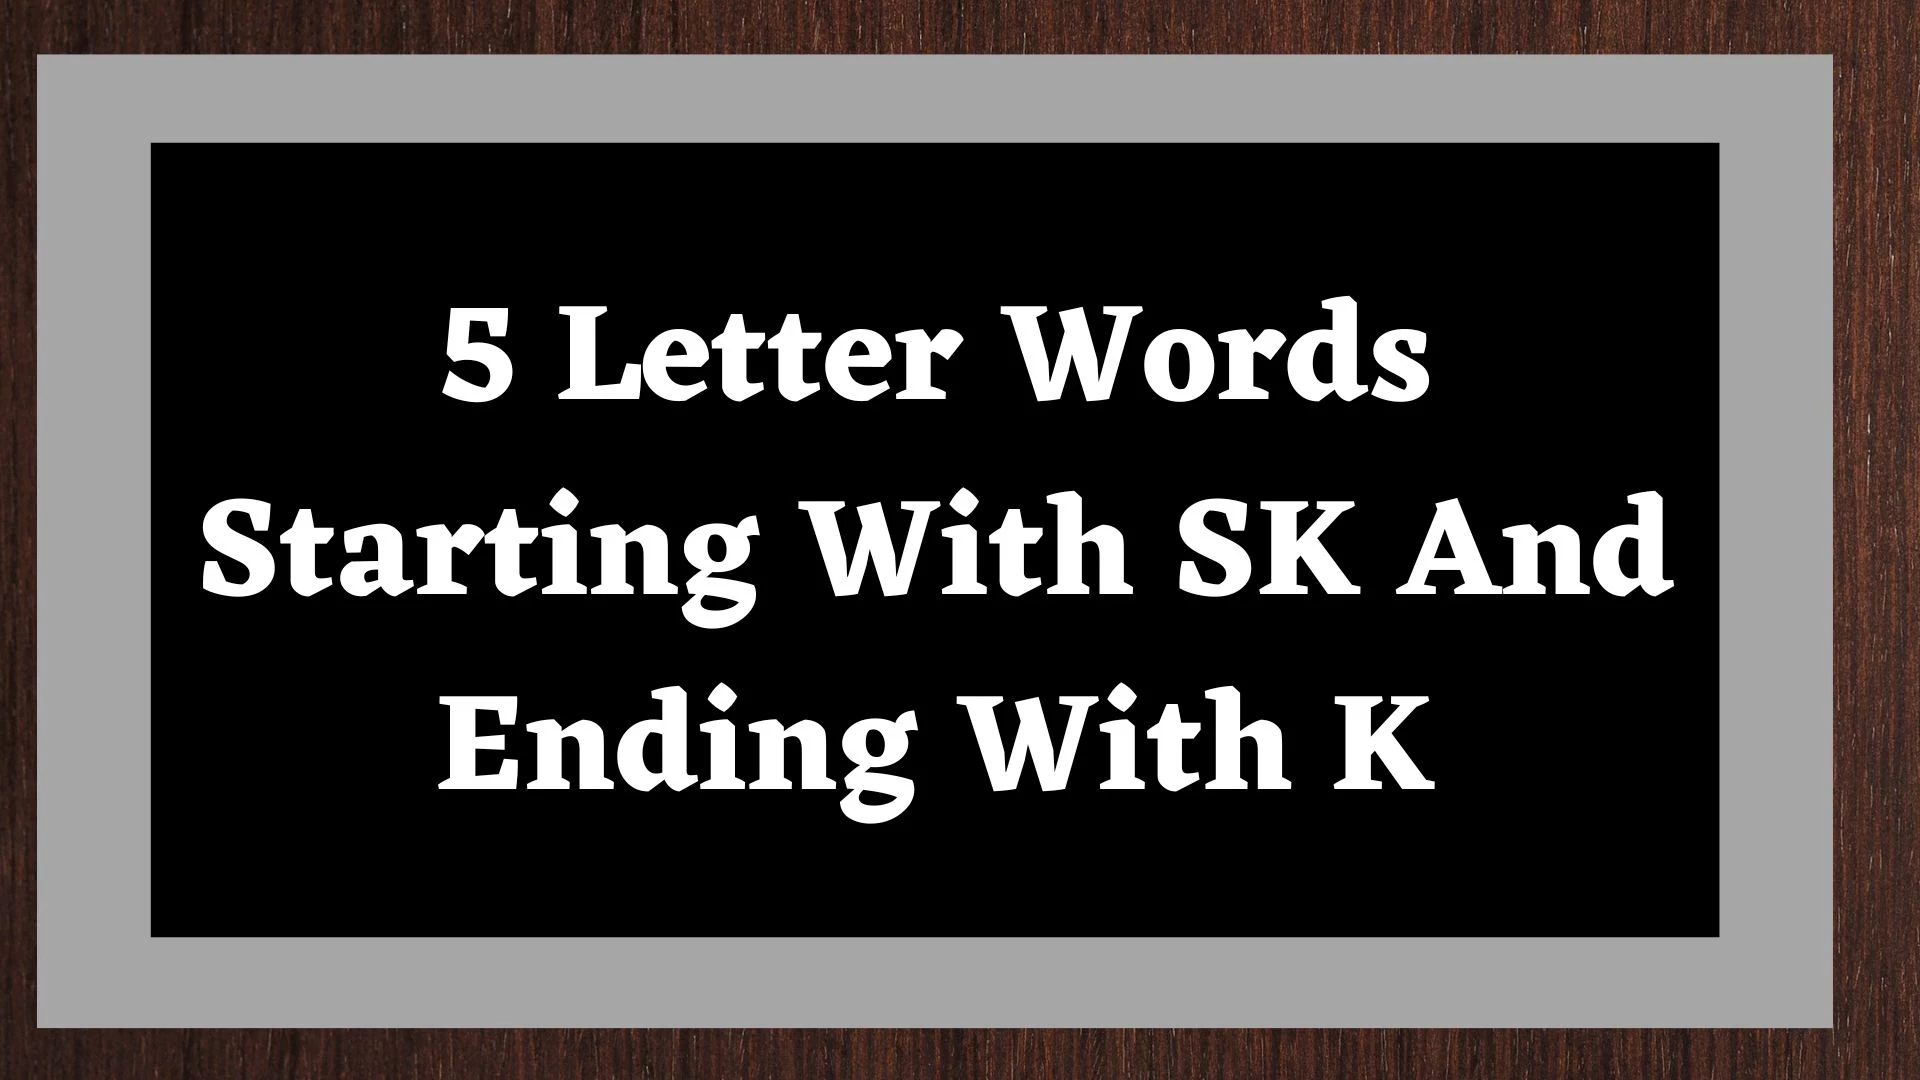 Palabras de 5 letras que comienzan con SK y terminan con K.